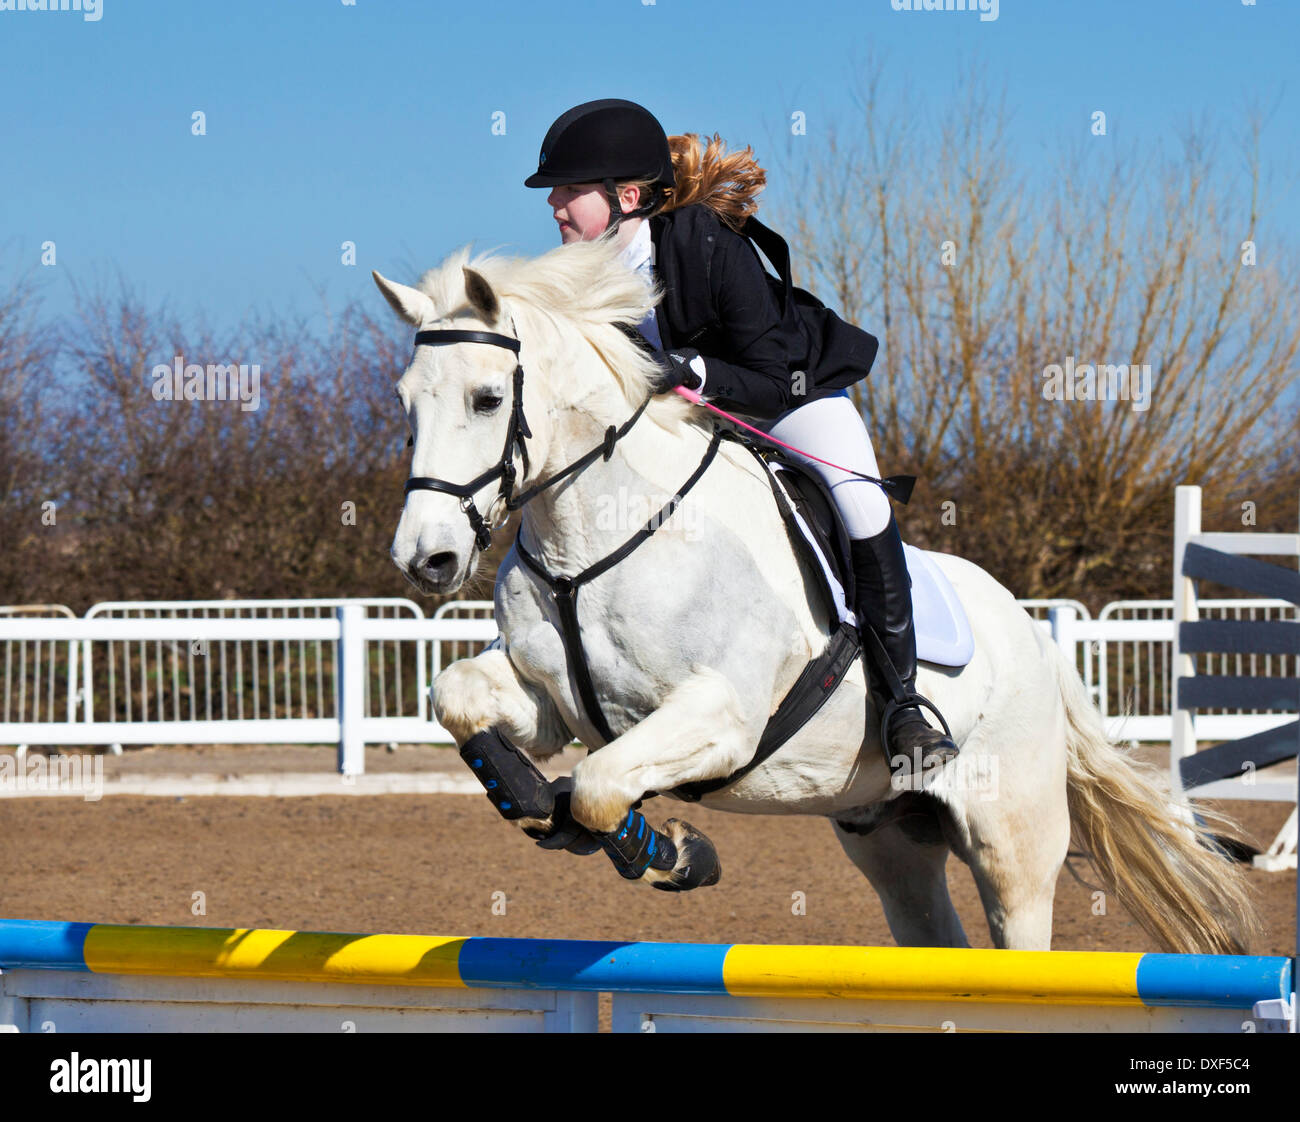 Junges Mädchen, ein weißes Pferd Pony über einen Sprung auf ein Springturnier Veranstaltung Reiten springen Stockfoto